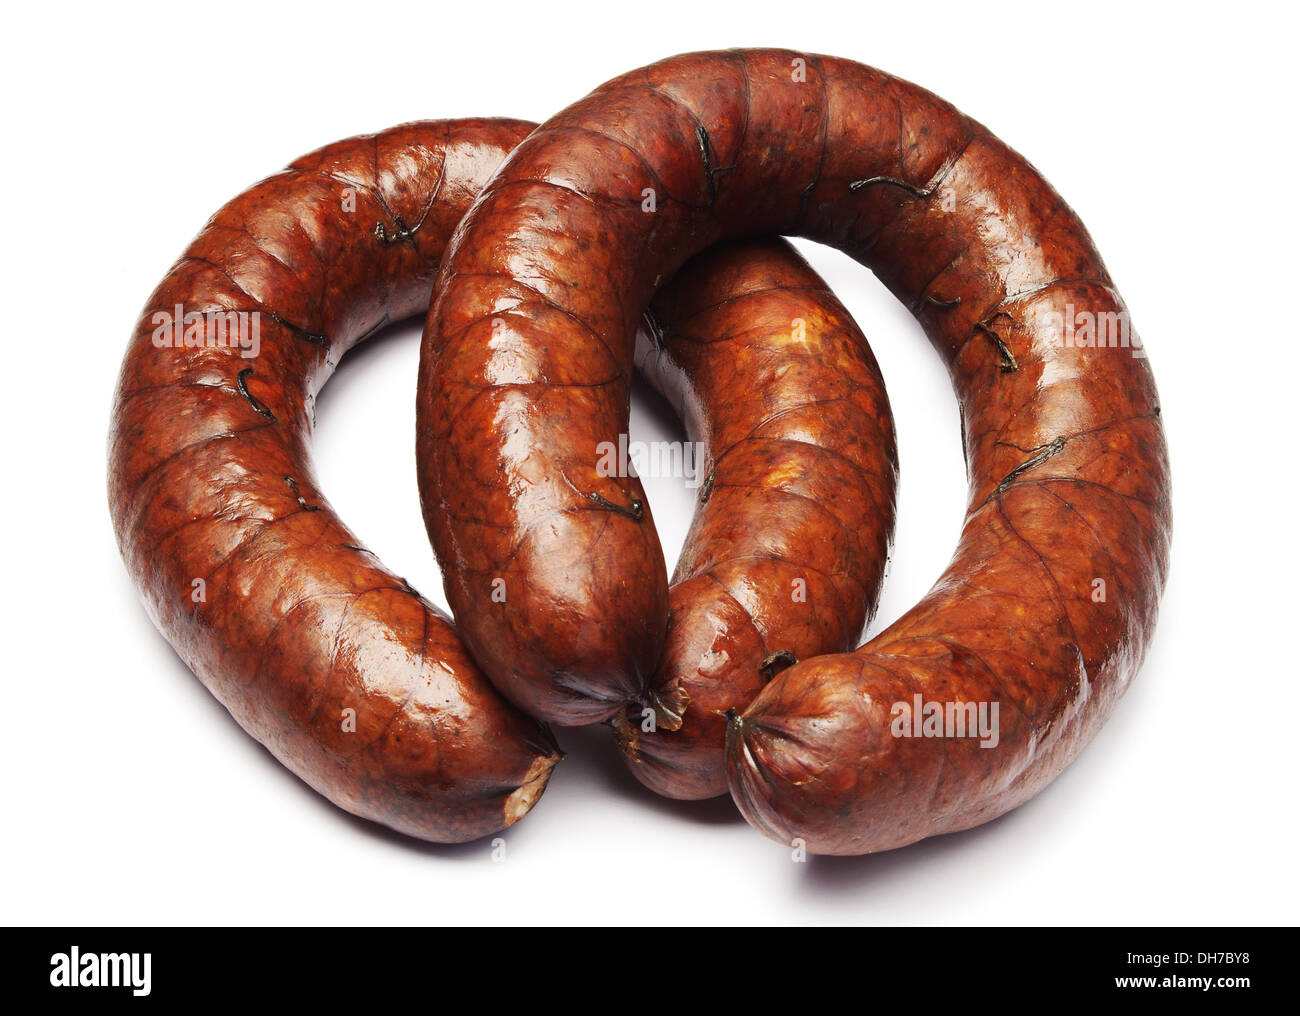 Homemade smoked sausage on white Stock Photo